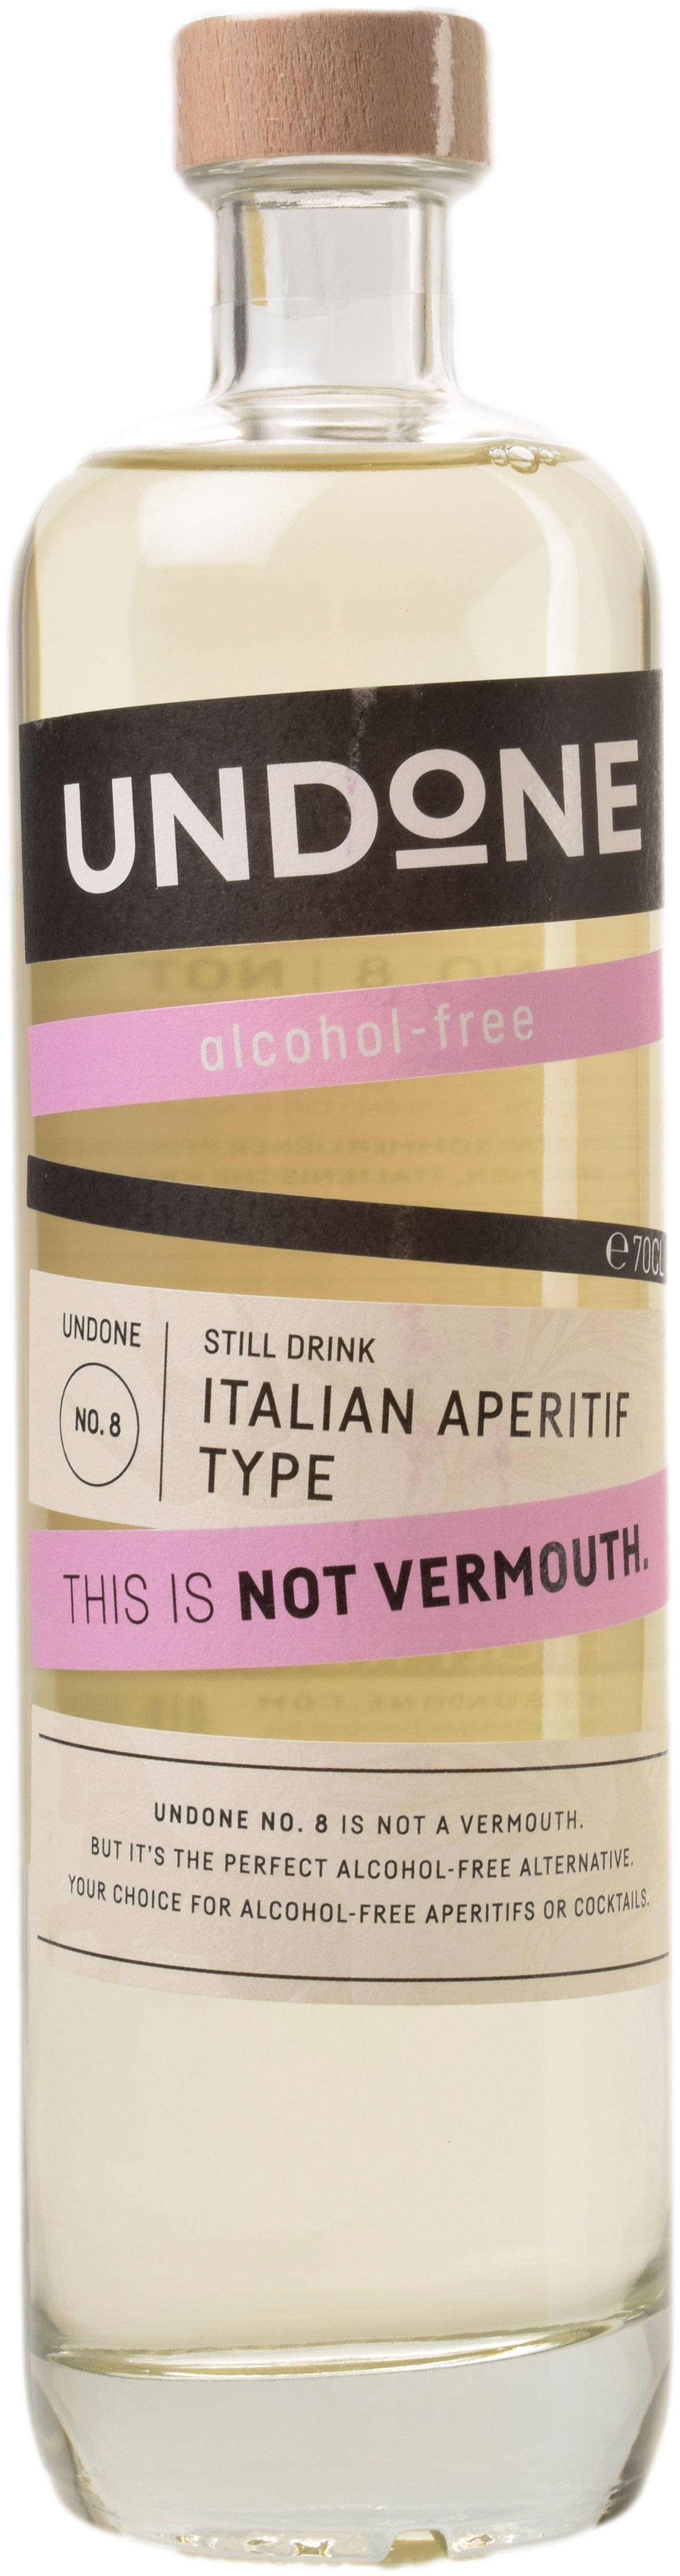 - ...besser günstig kaufen Alk Italien | Not No Vinopolis Undone 8 | Online Vermouth Wein kaufen Aperitiv Type